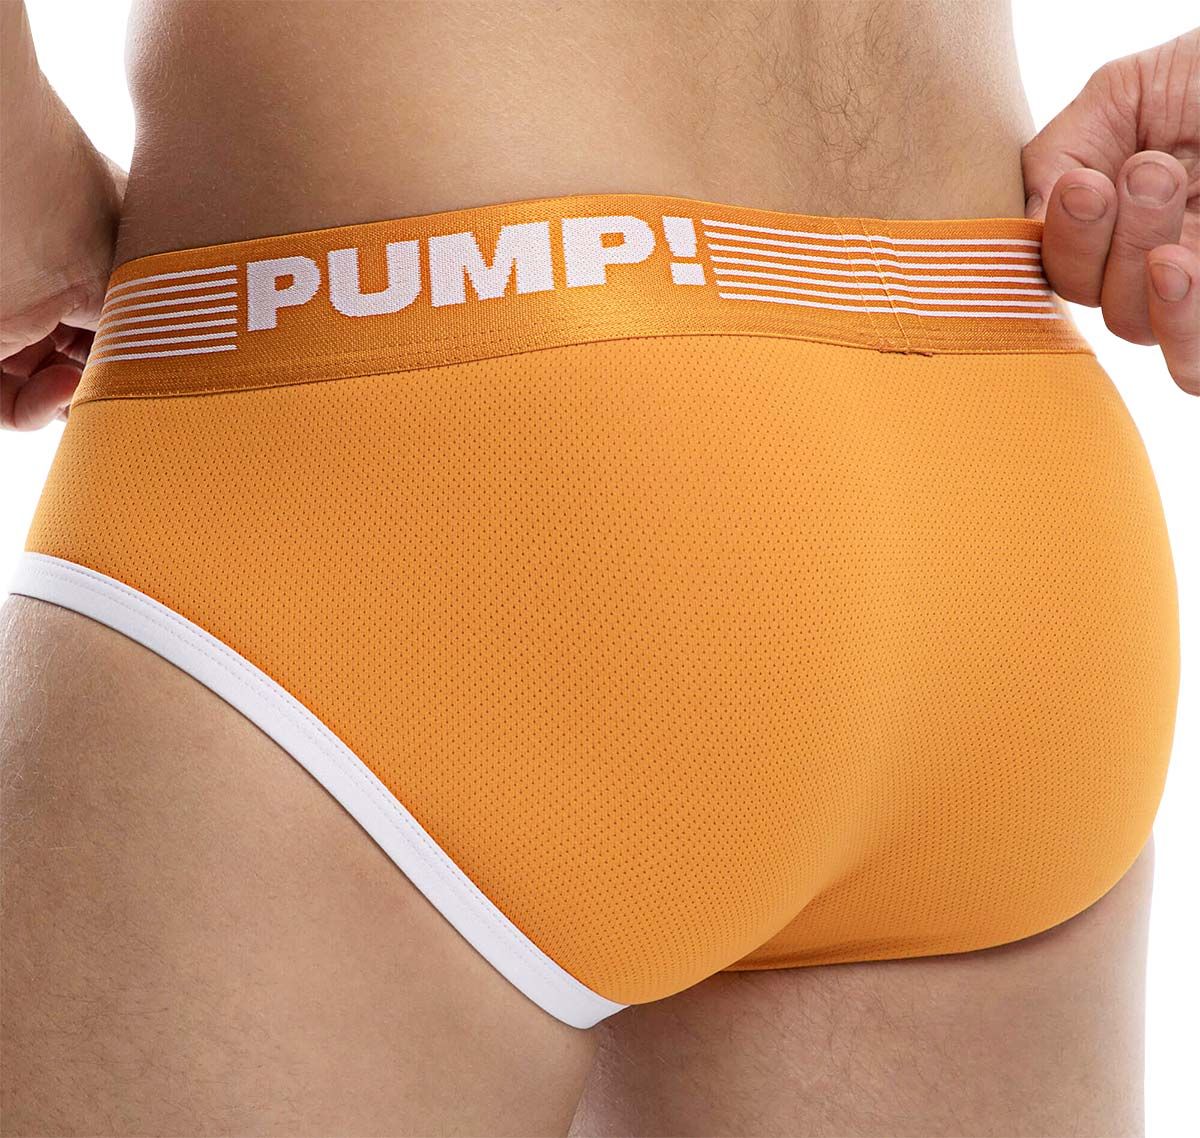 PUMP! Slip CREAMSICLE BRIEF 12046, arancione